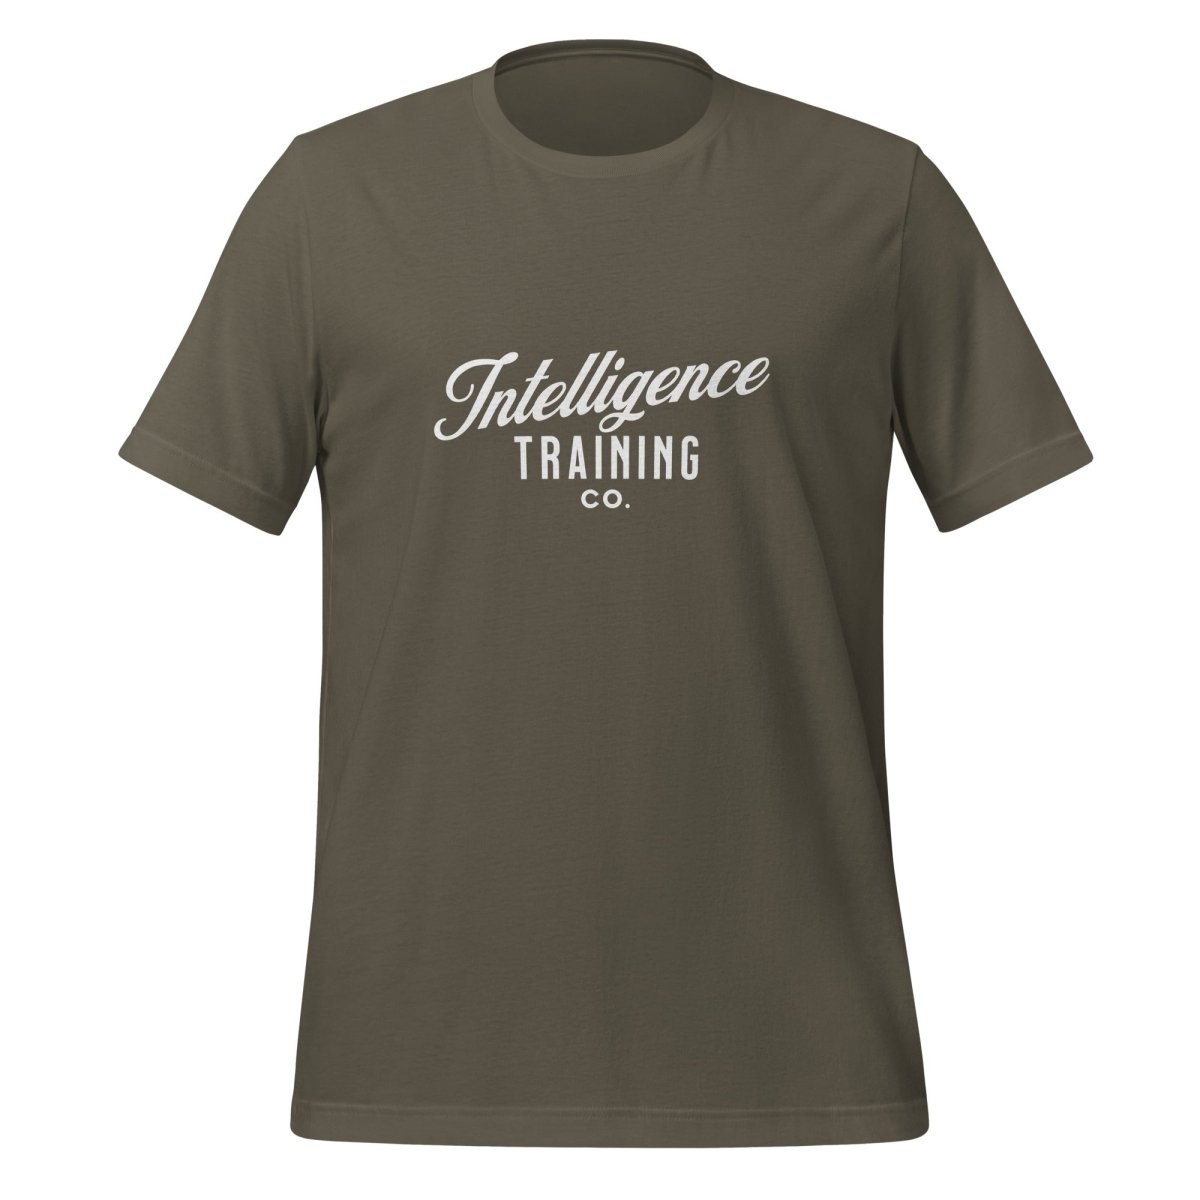 Intelligence Training Co. T - Shirt (unisex) - Army - AI Store